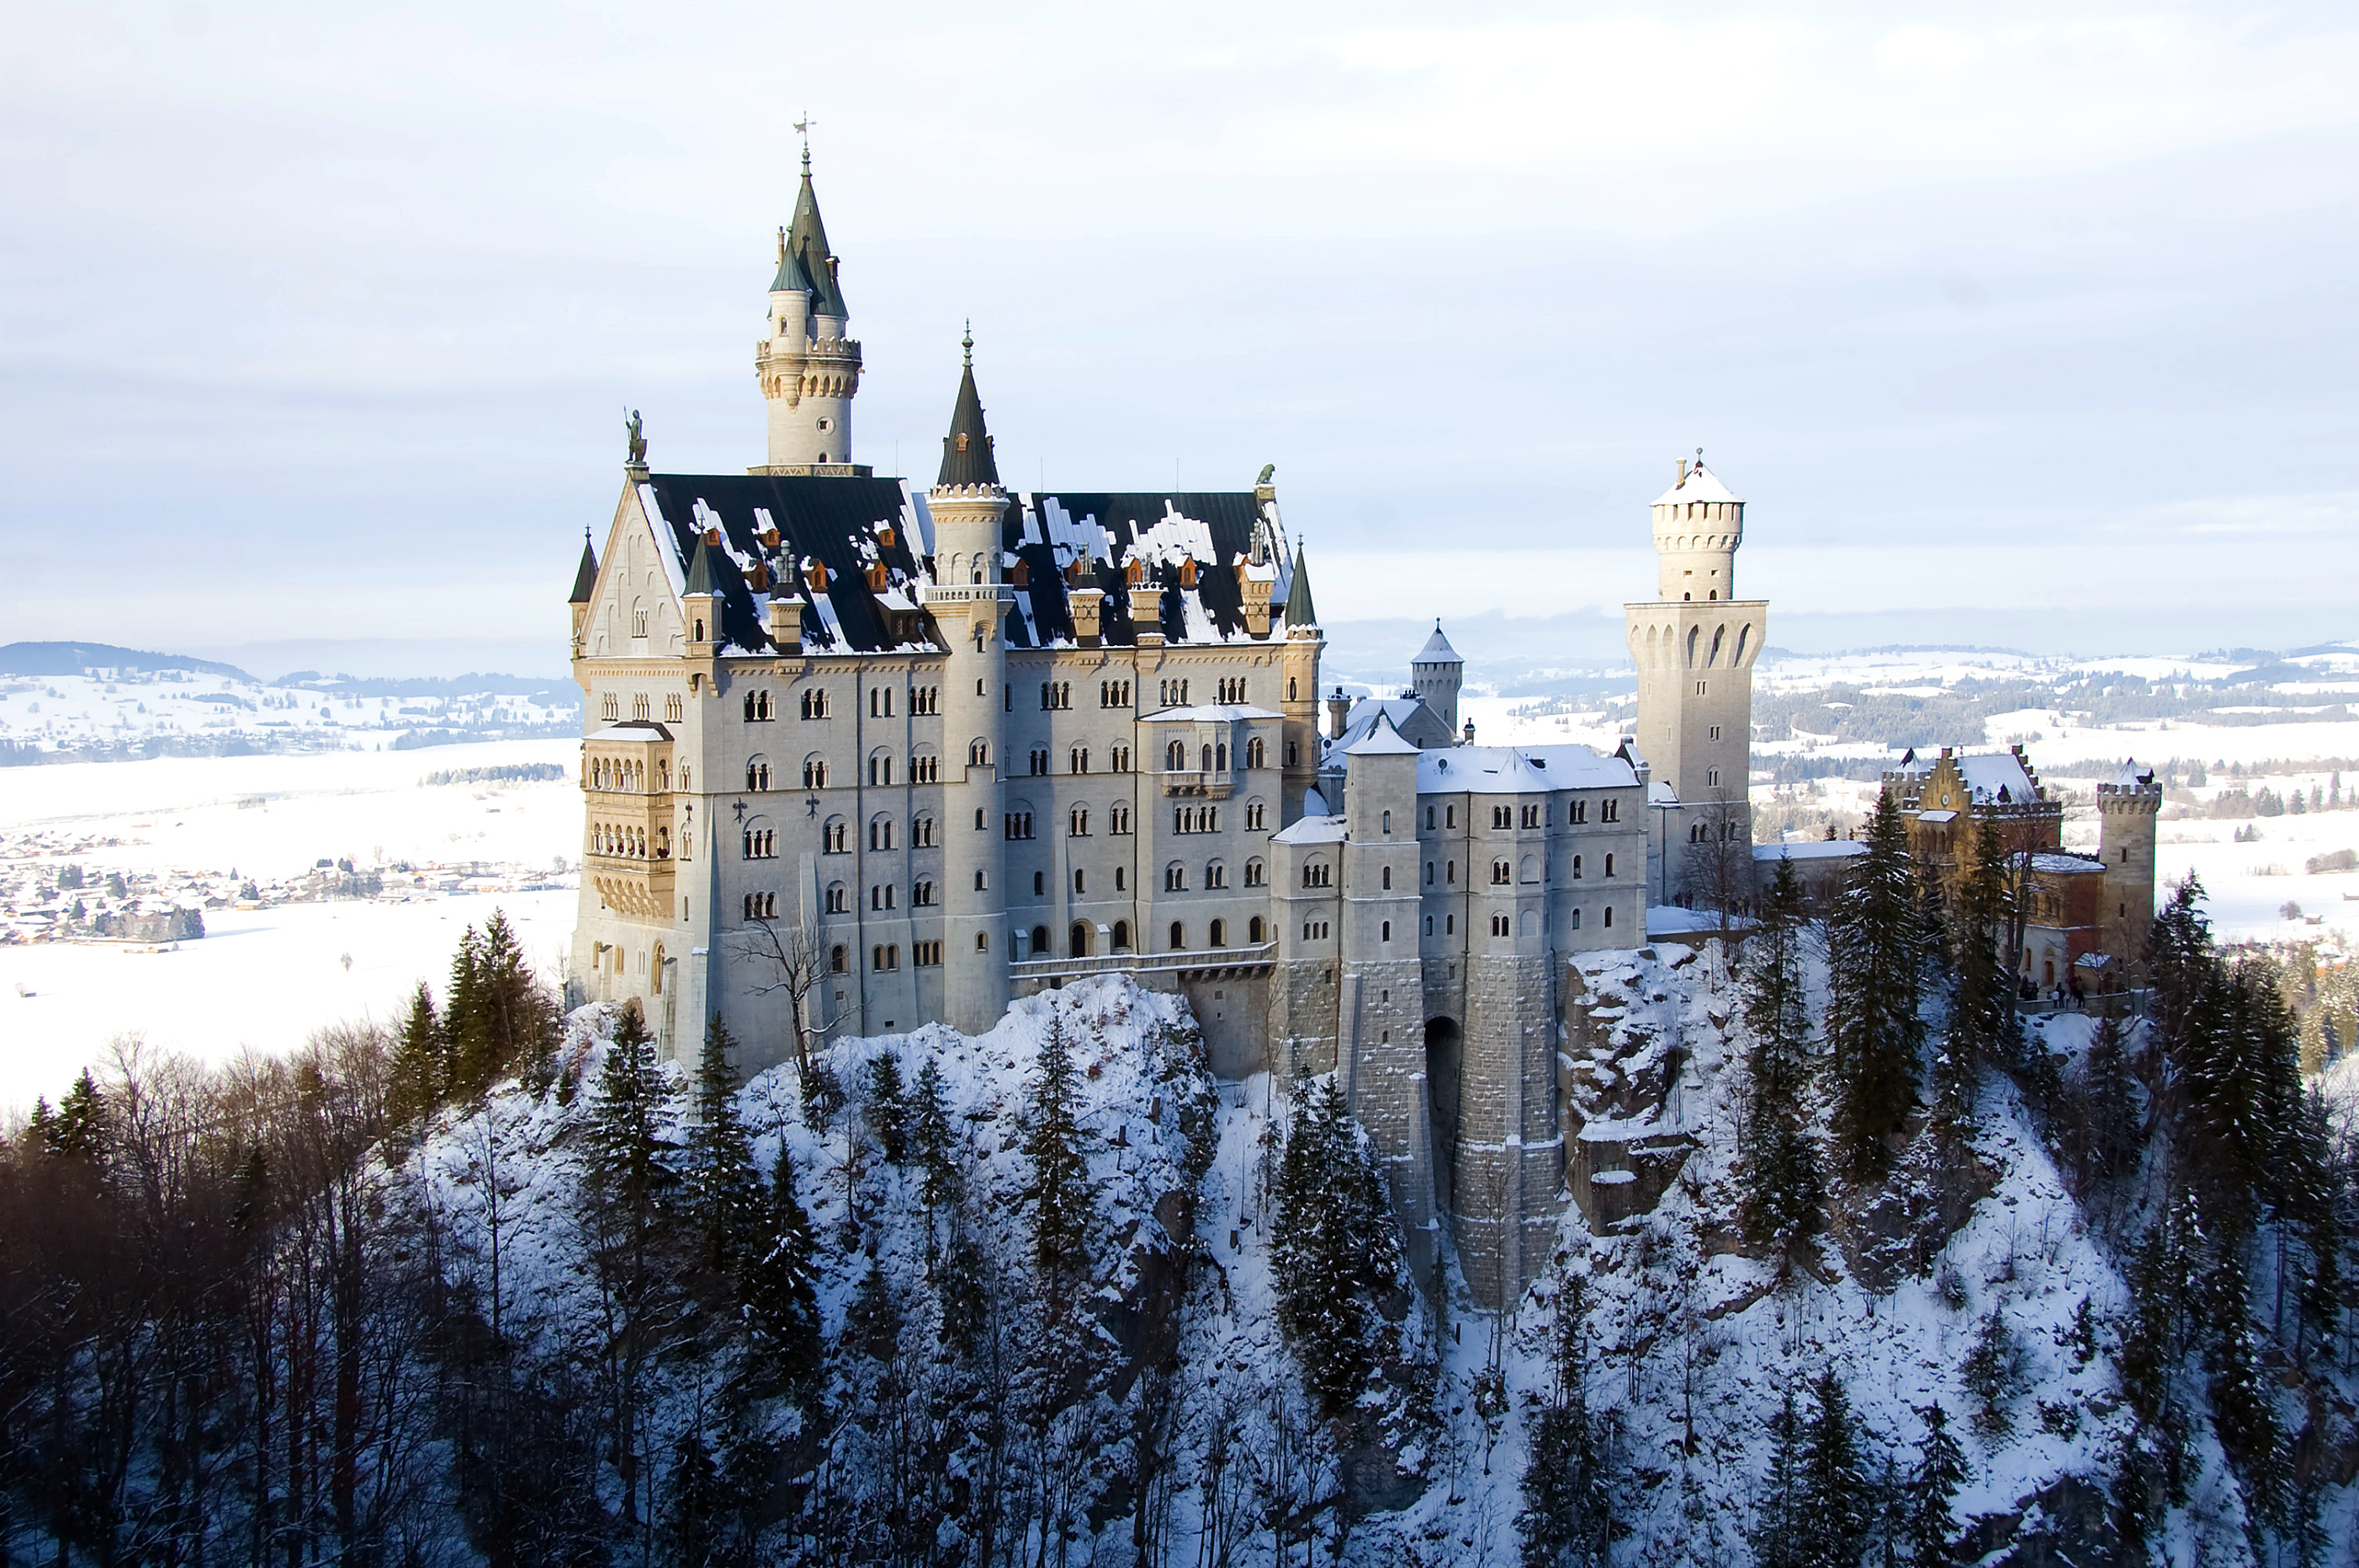 Neuschwanstein Castle in snowy winter, a stunning man-made marvel in Bavaria, Germany.